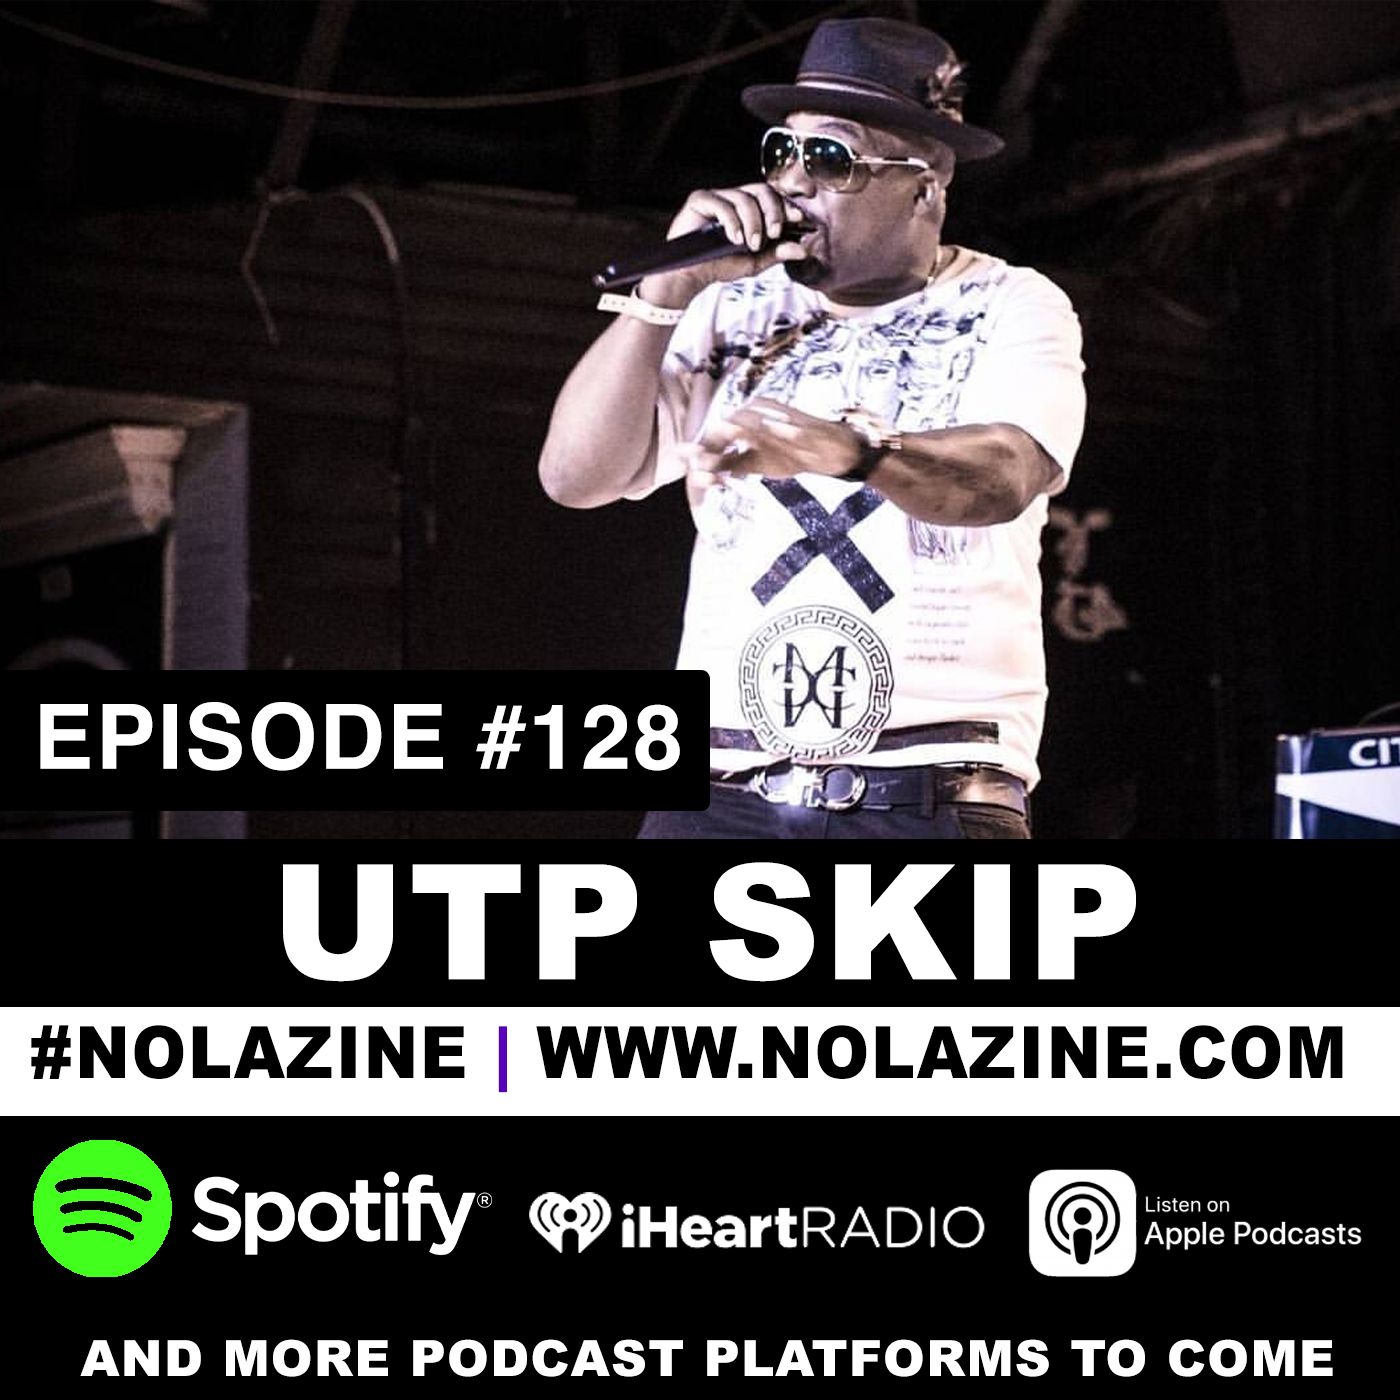 EP: 128 Featuring UTP Skip